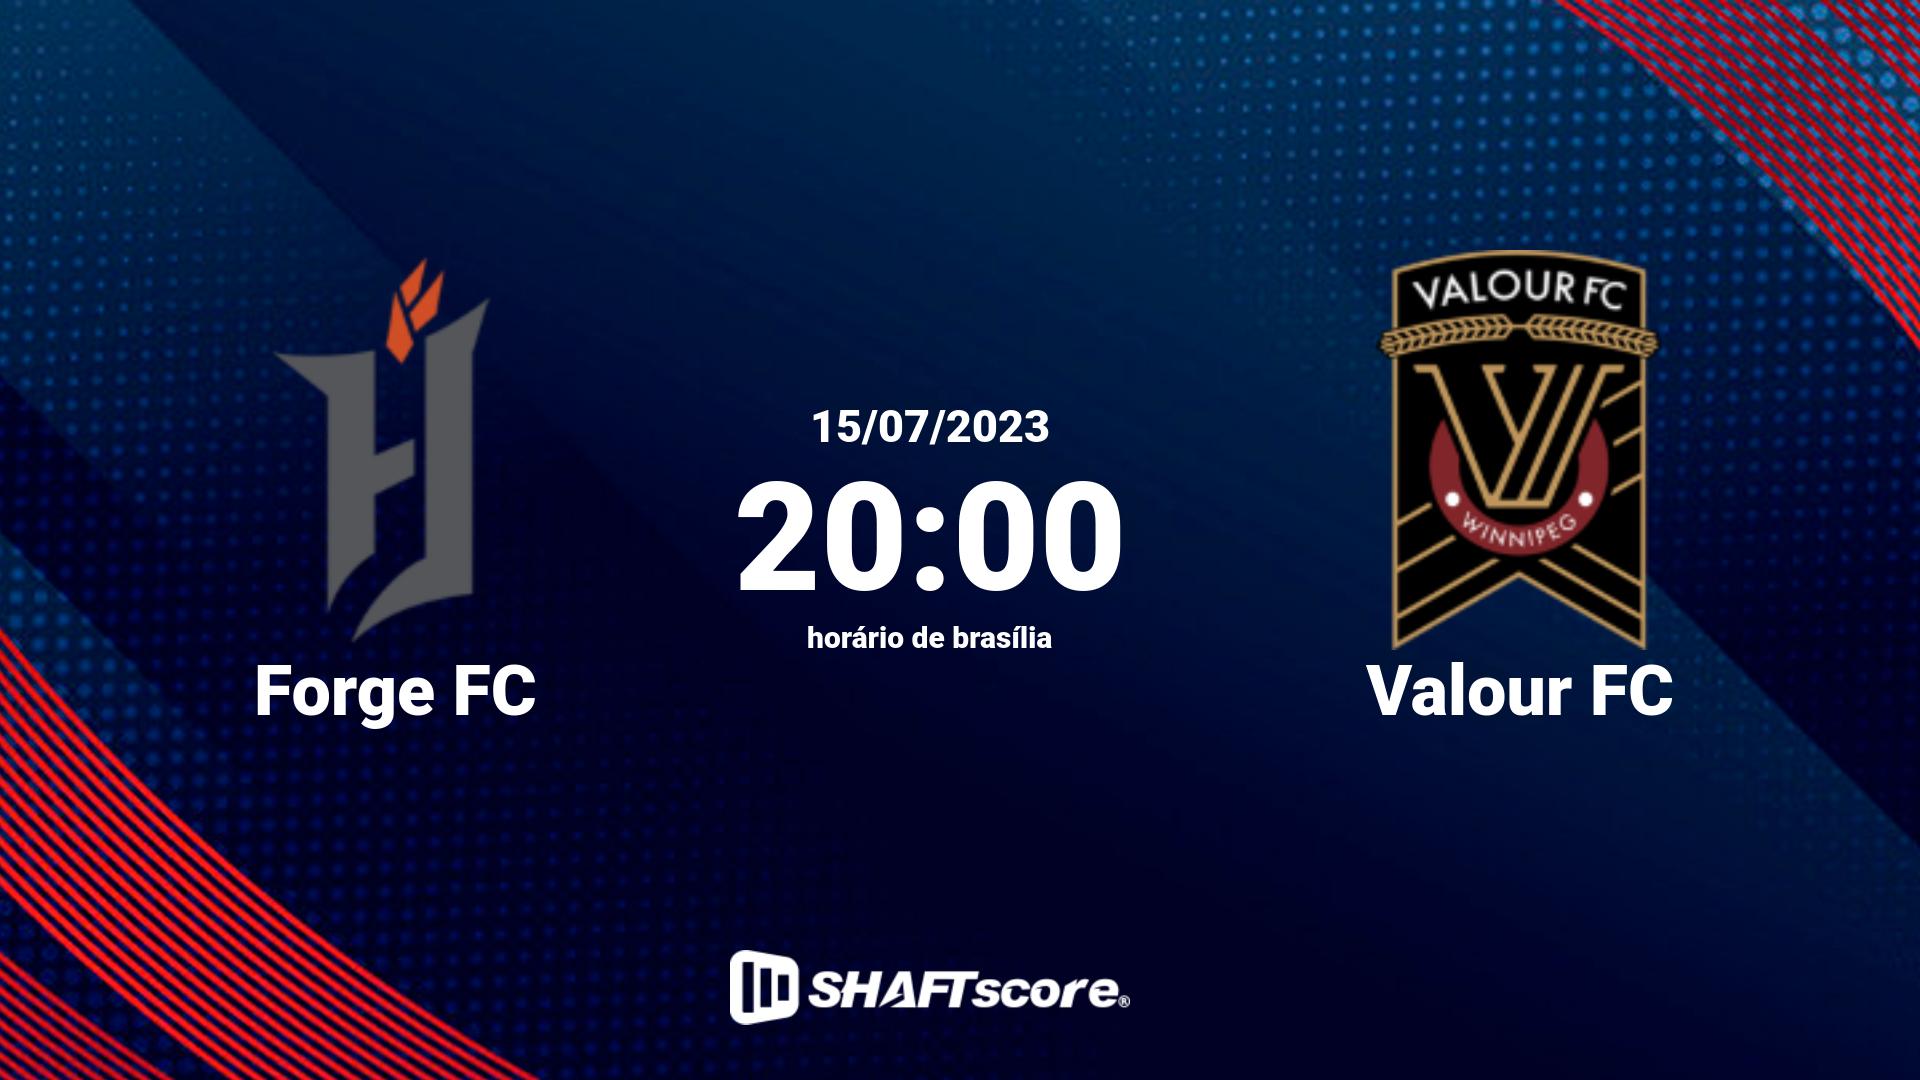 Estatísticas do jogo Forge FC vs Valour FC 15.07 20:00